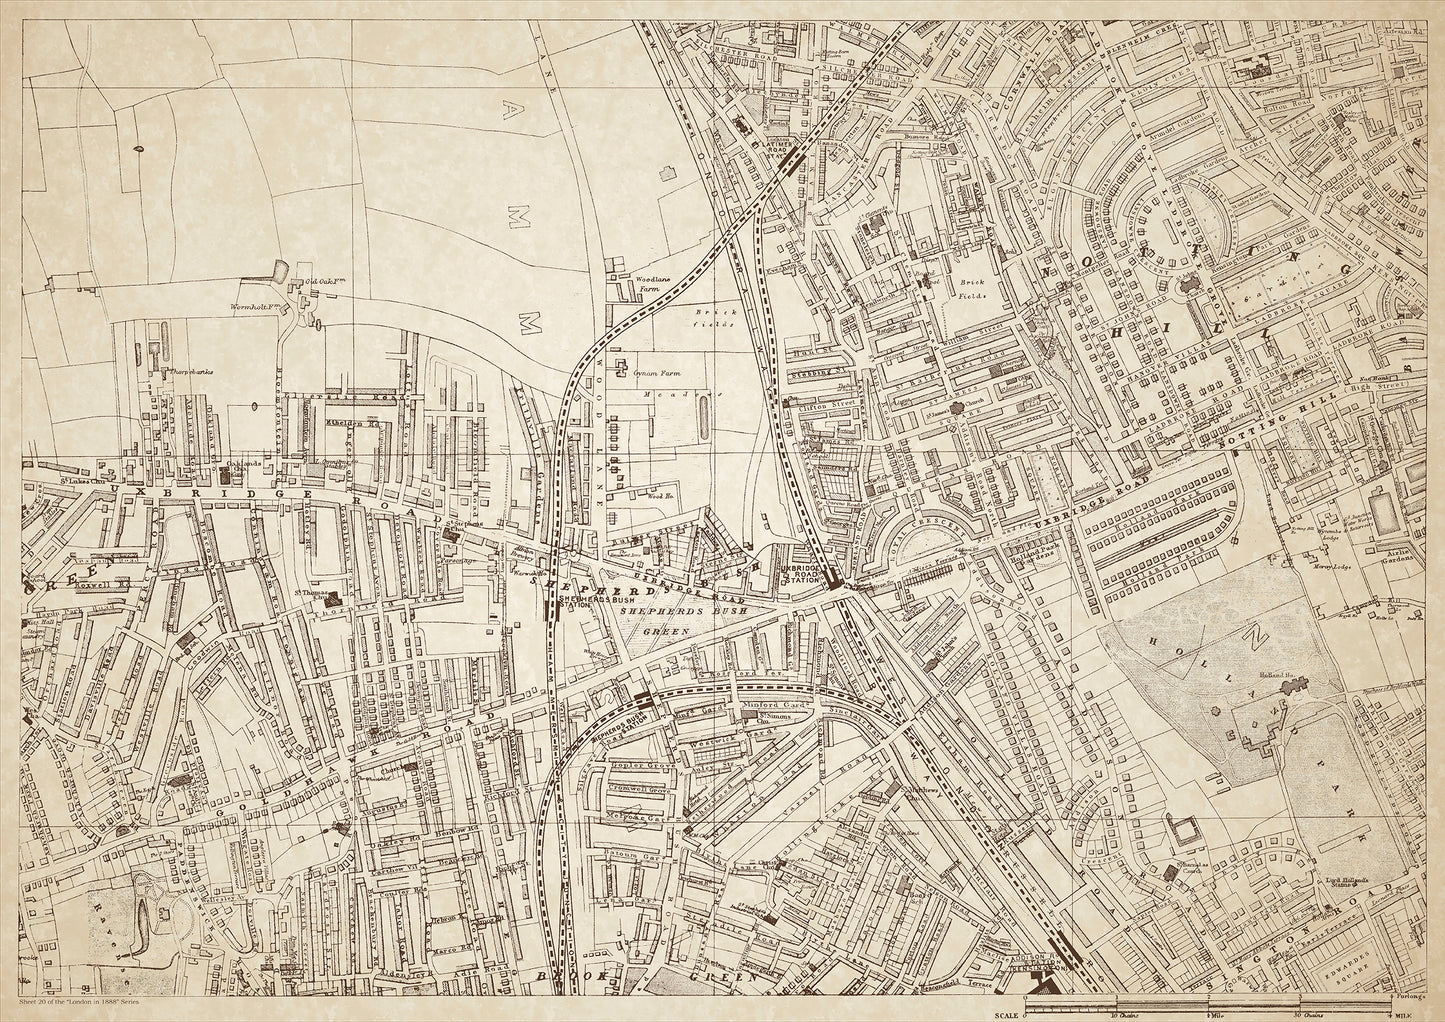 London in 1888 Series - showing Shepherds Bush, Notting Hill - sheet 20